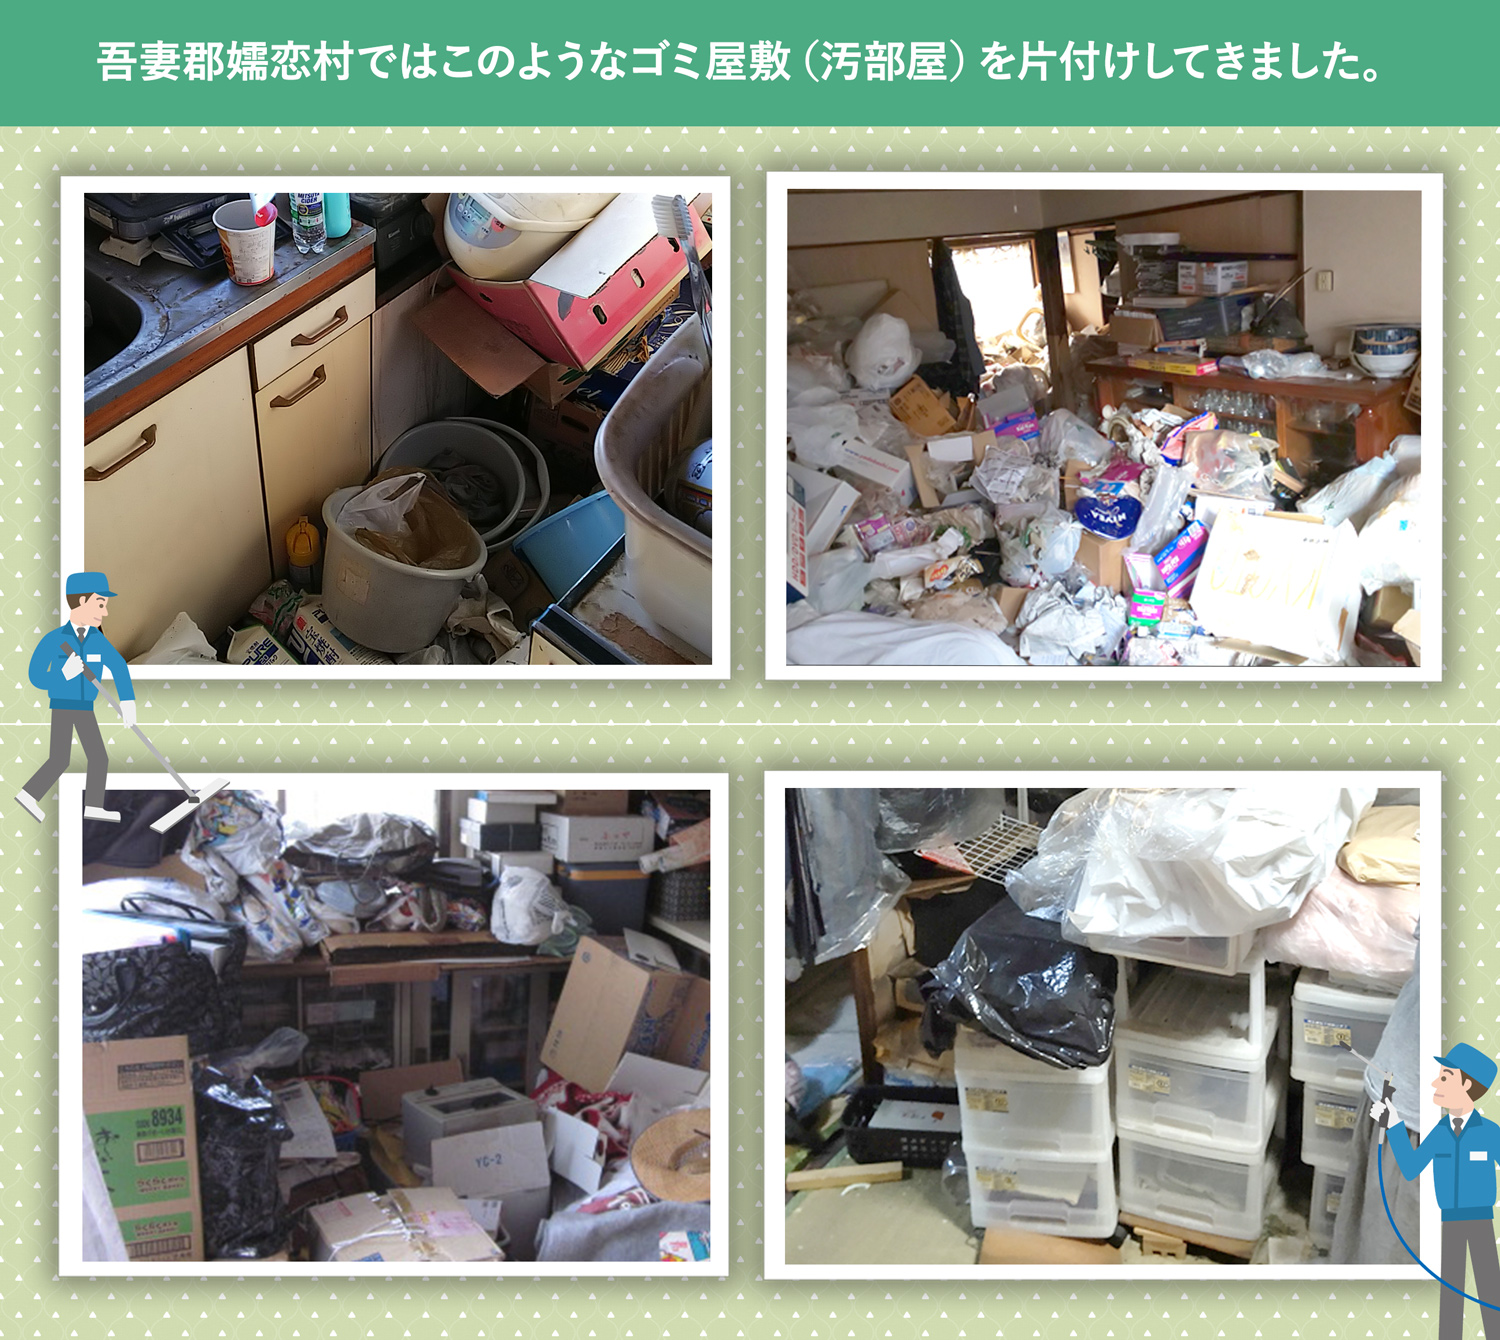 吾妻郡嬬恋村で行ったで行ったごみ屋敷・汚部屋の片付けの一例